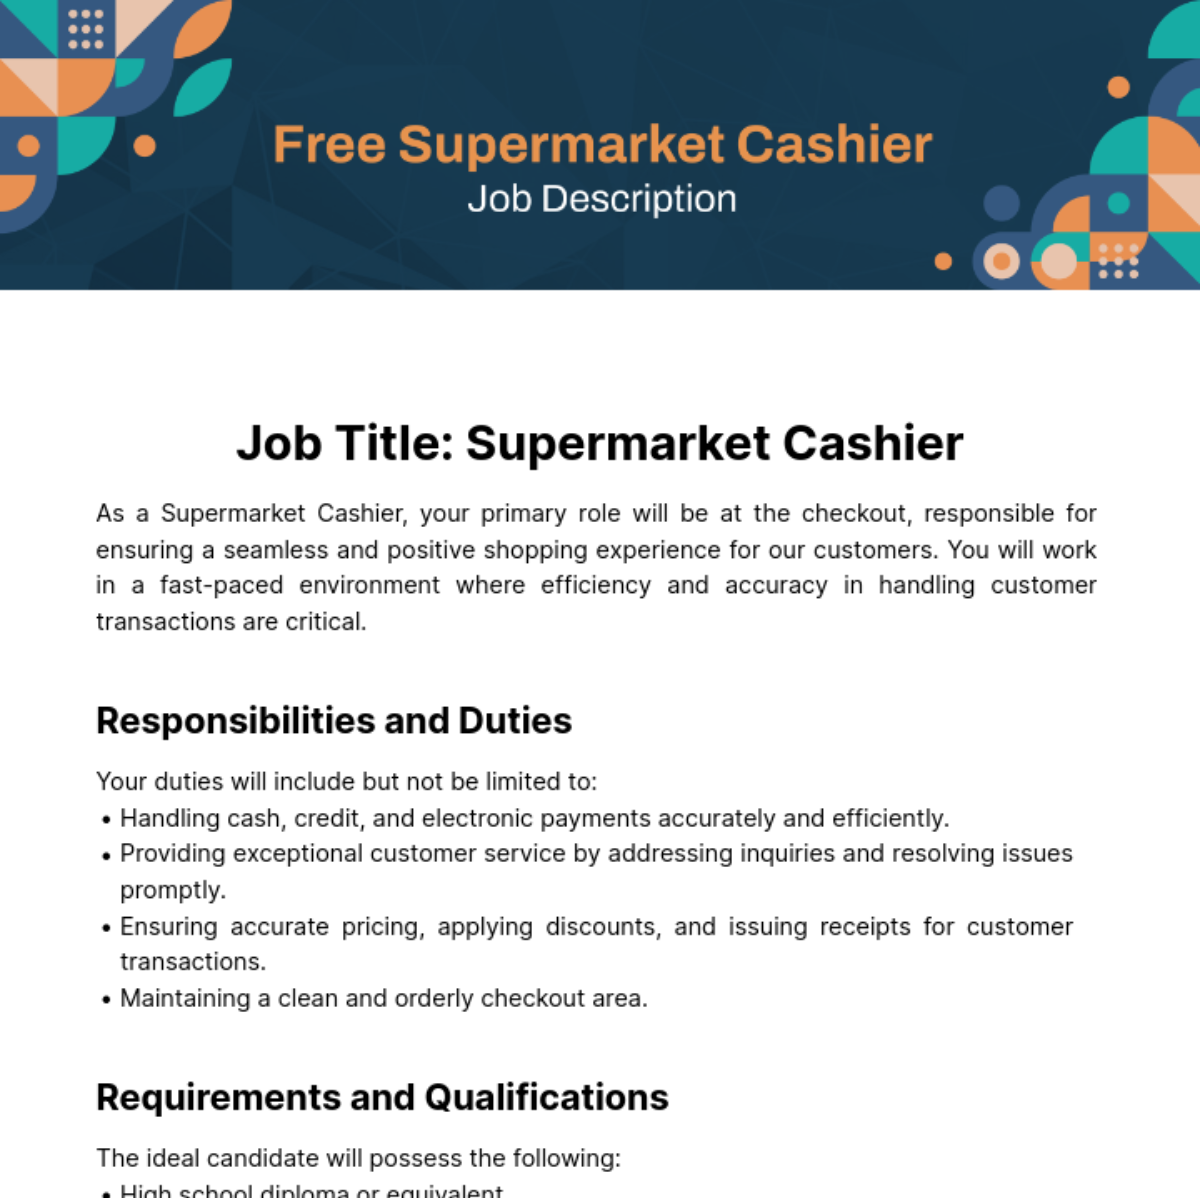 Free Supermarket Cashier Job Description Template